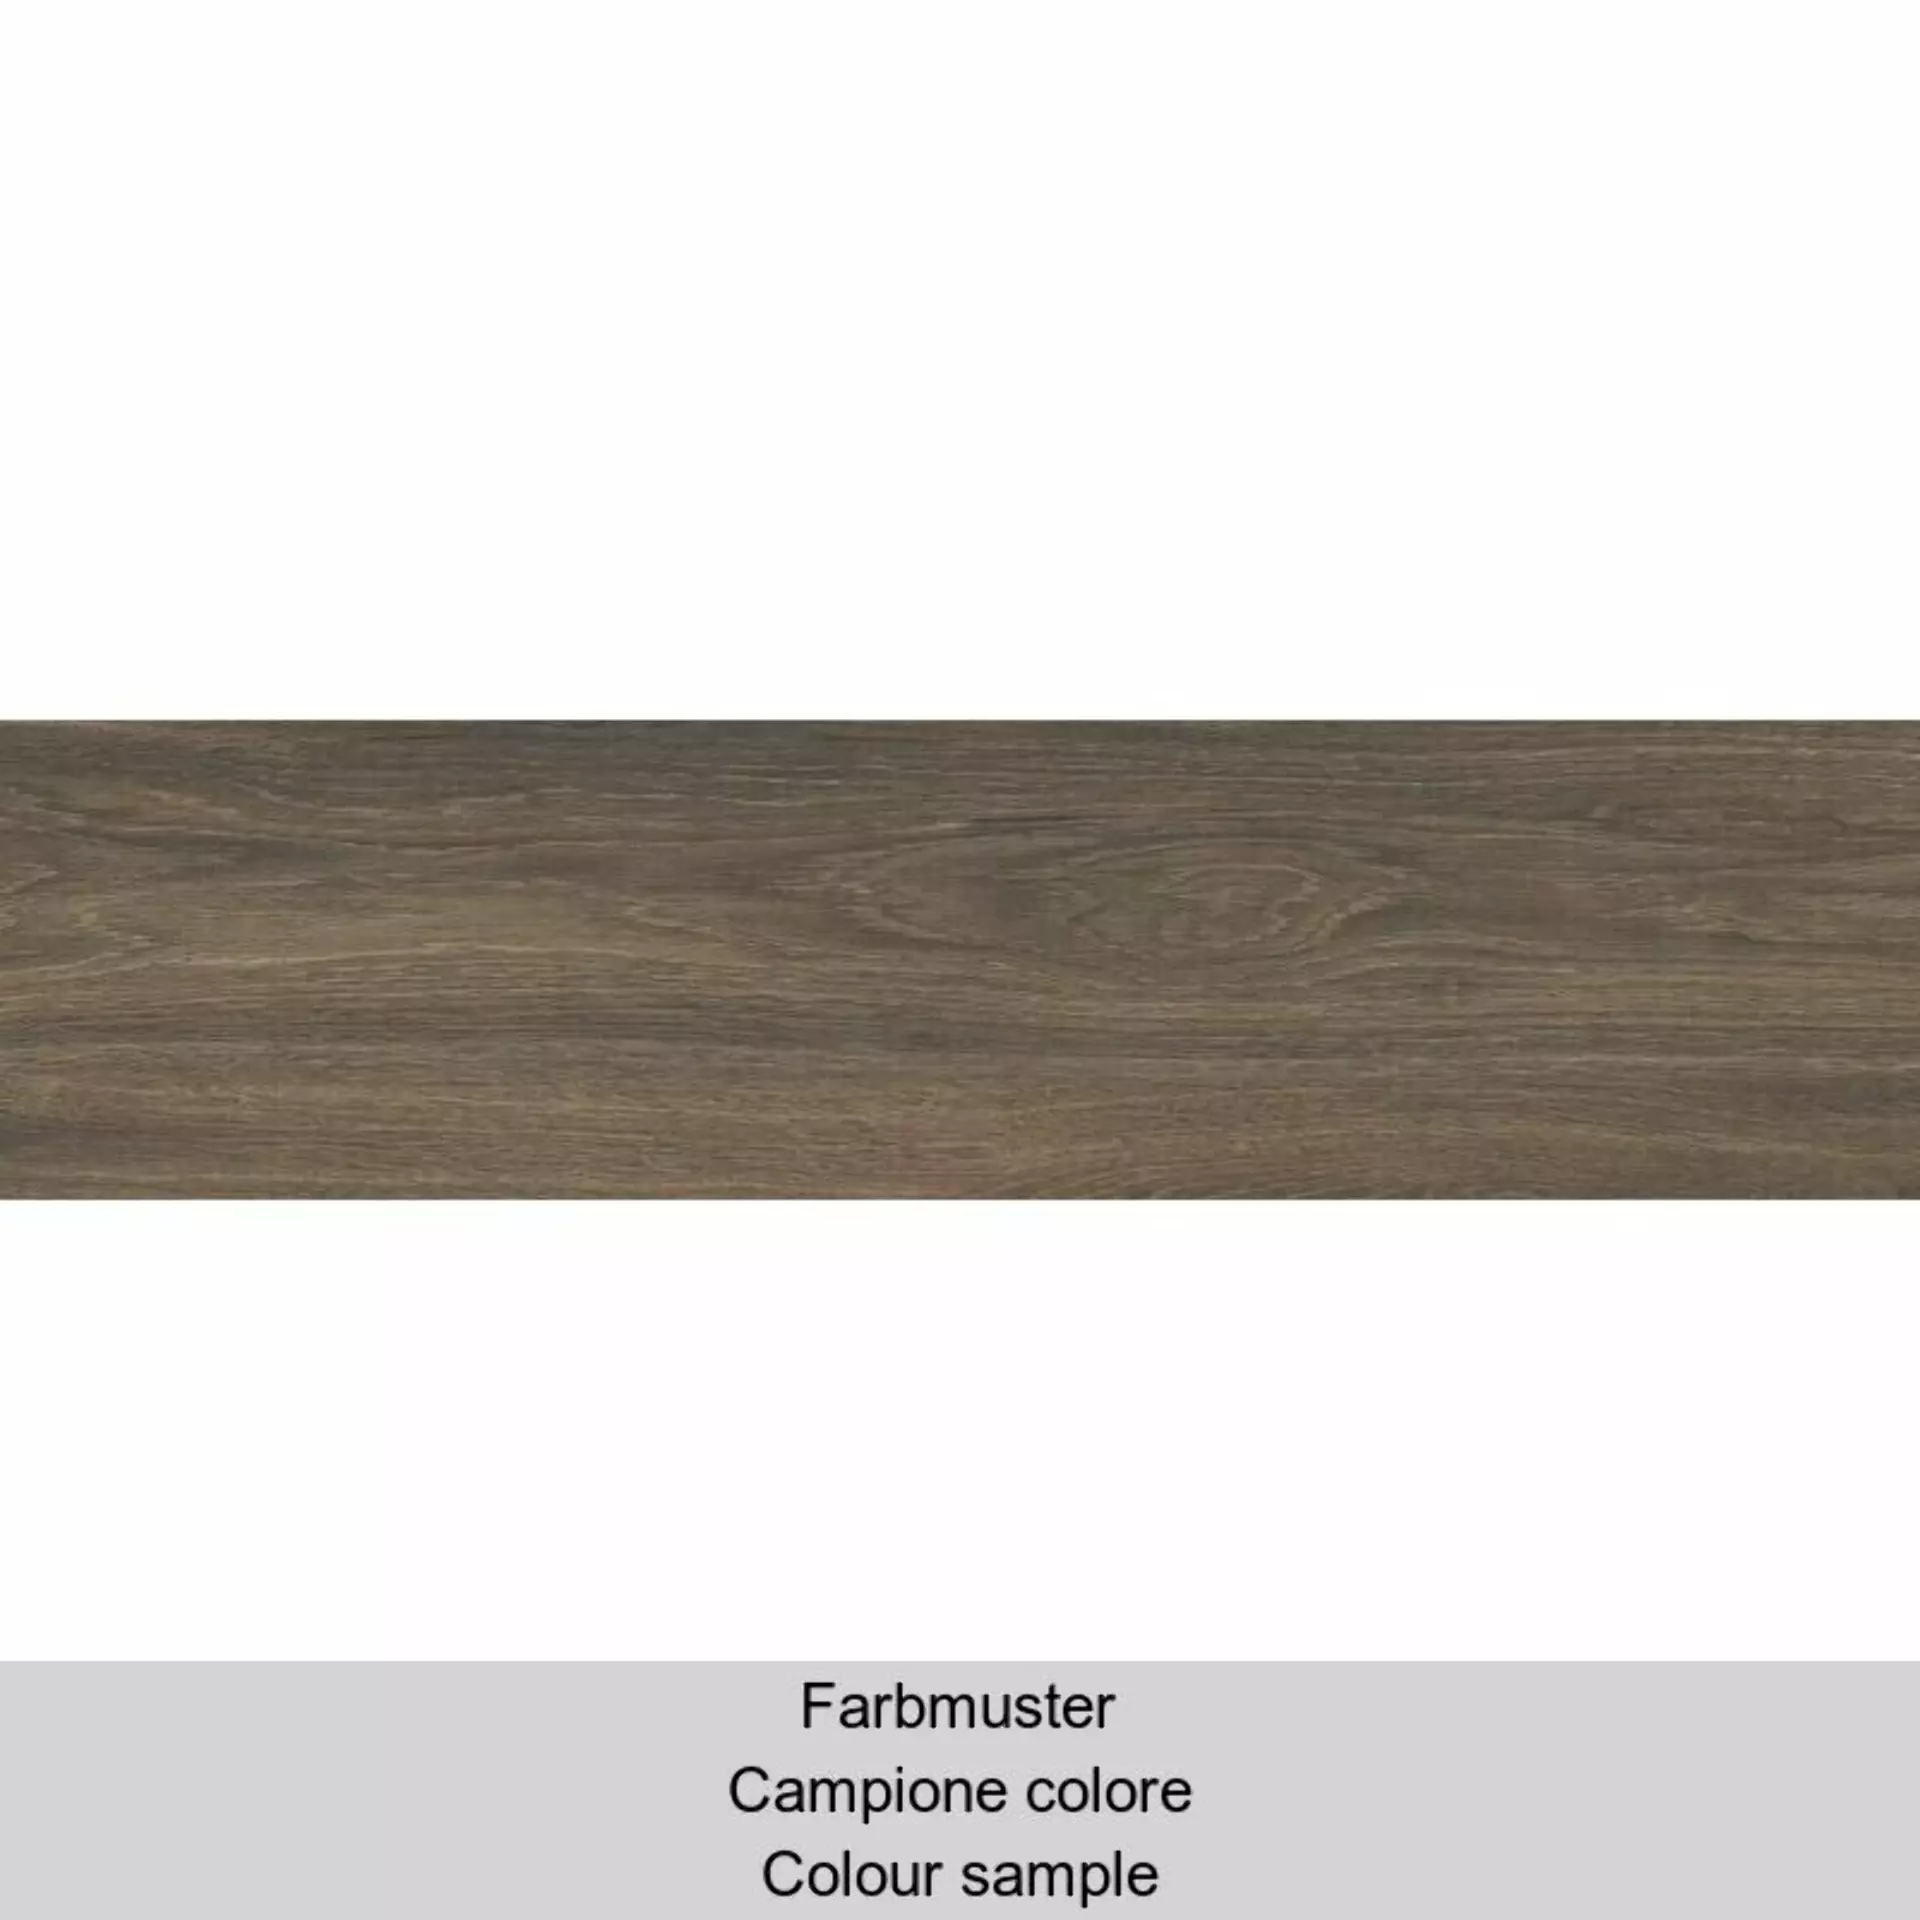 Casalgrande Planks Bruno Naturale – Matt 10340086 30x120cm rectified 6mm